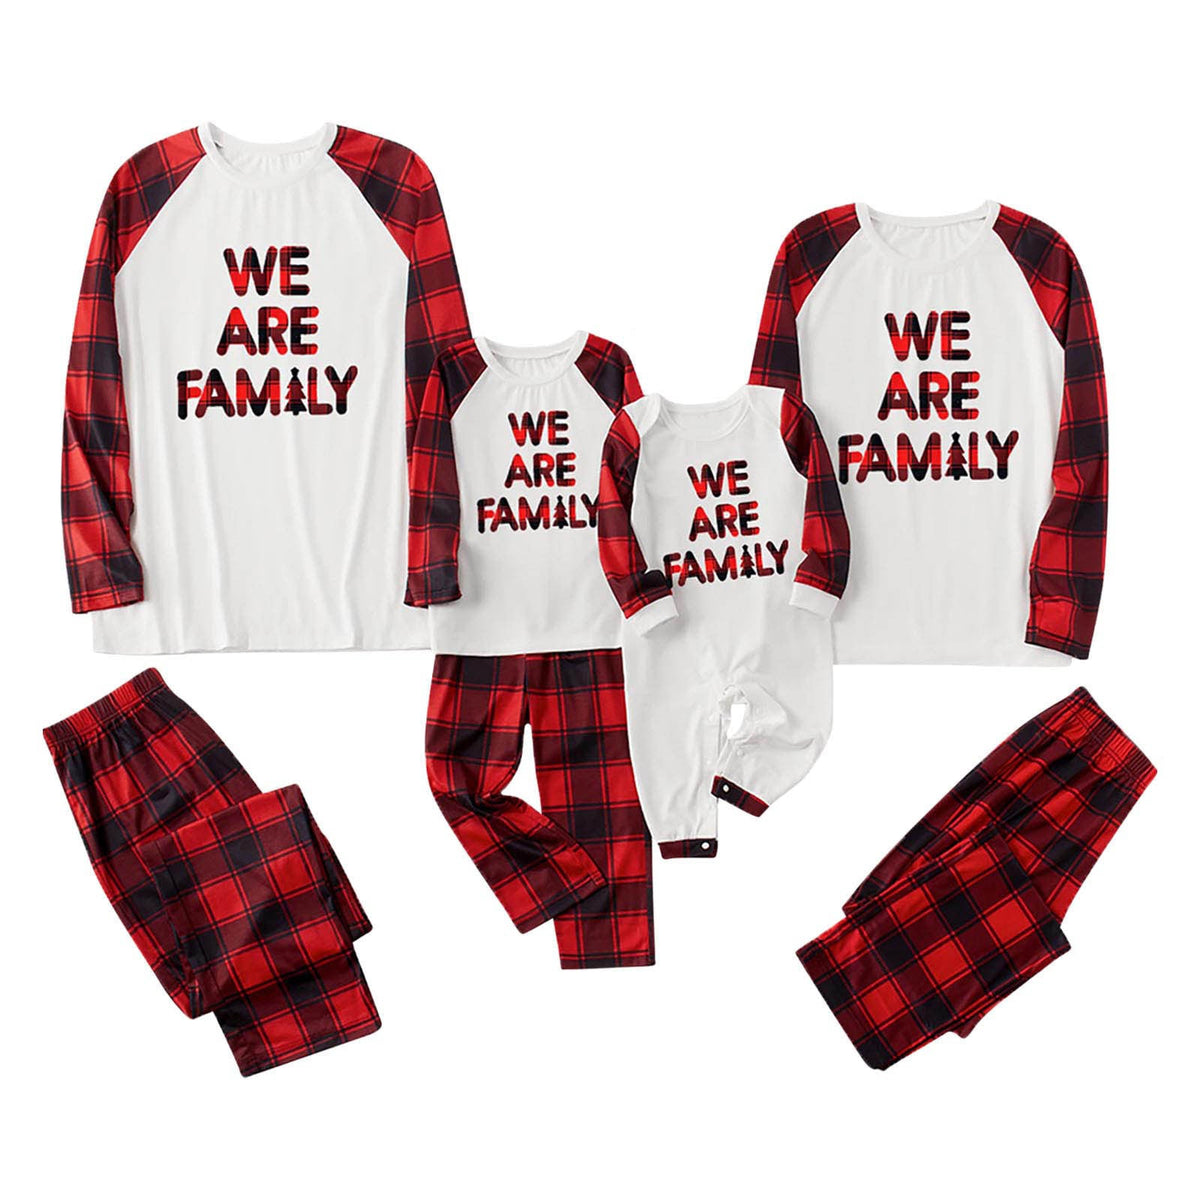 We are Family Christmas Matching Family Pajamas Plus Size Red Plaid Pajamas Set With Dog Pajamas